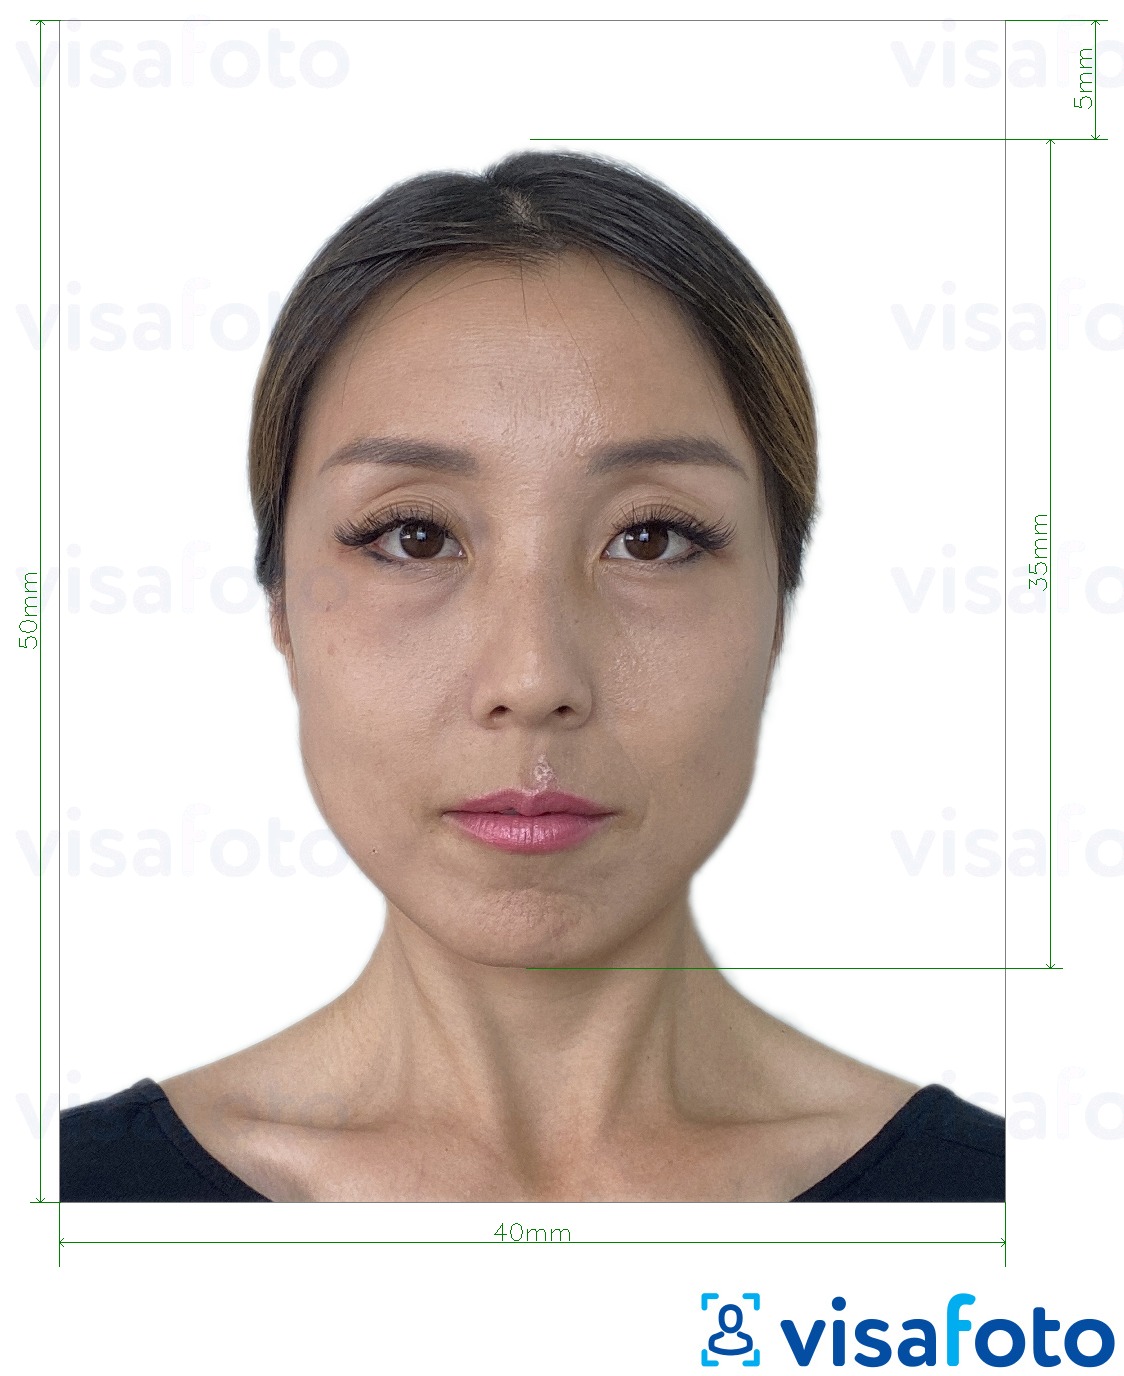 Contoh foto untuk Hong Kong Visa 40x50 mm (4x5 cm) dengan spesifikasi saiz yang tepat.